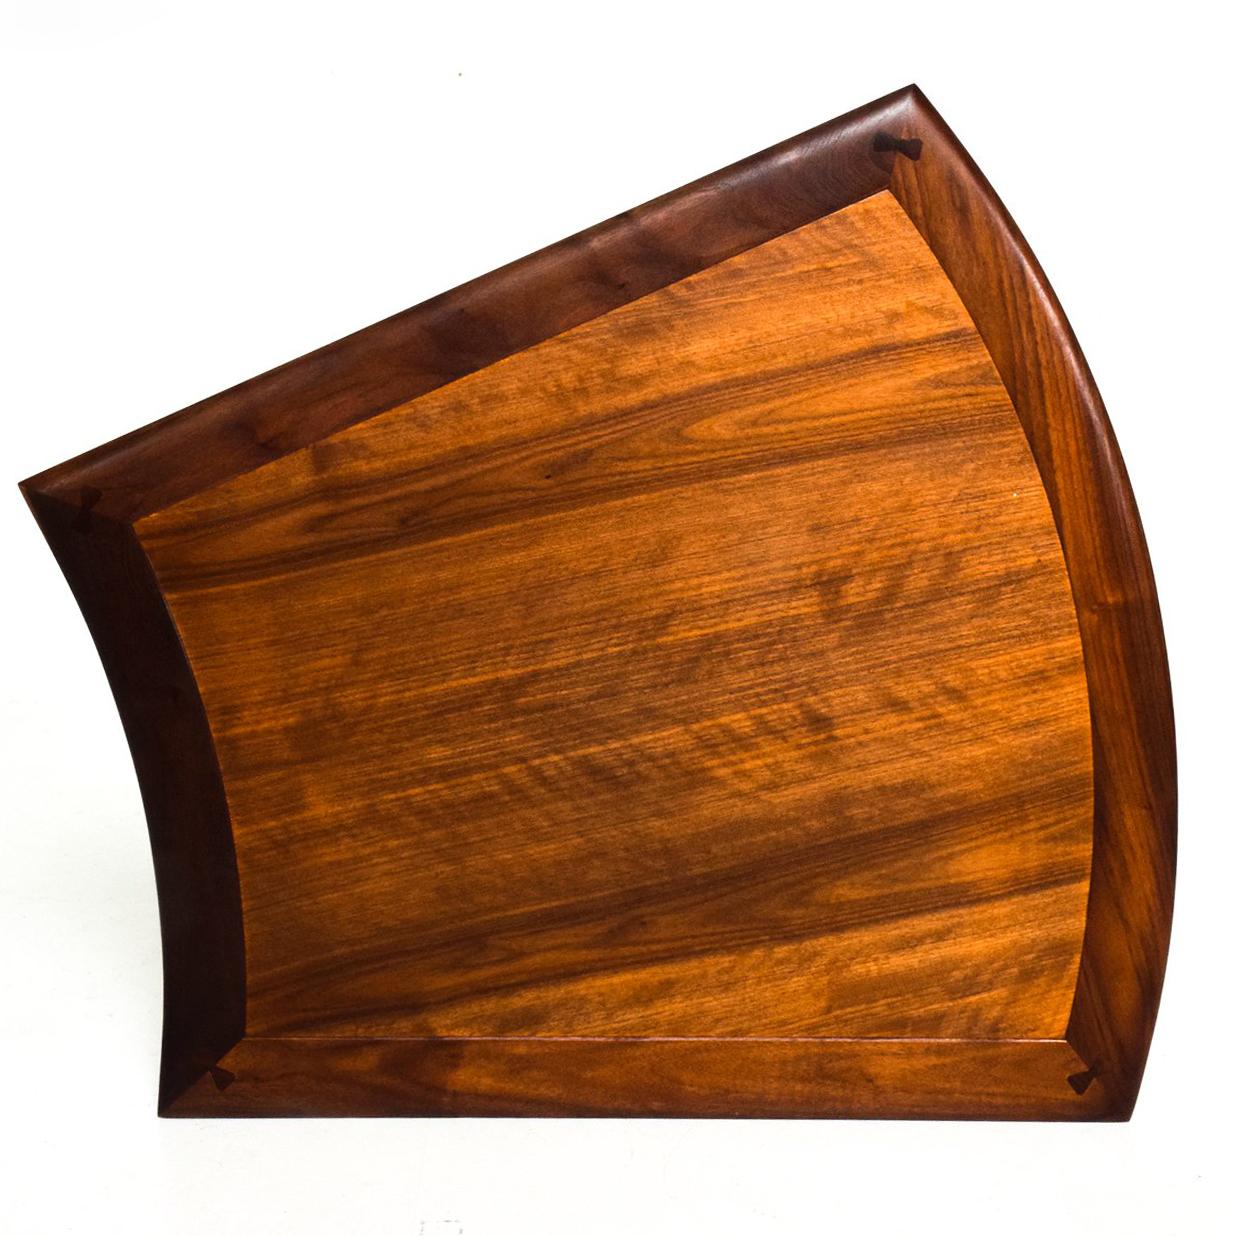 1960s Mid-Century Modern table wedge en noyer avec une base tripode conçue par Barney Flagg Parallele line pour Drexel USA
Magnifique design/One. Détails des joints en queue d'aronde sur le plateau de la table.
Le cachet du fabricant est apposé en